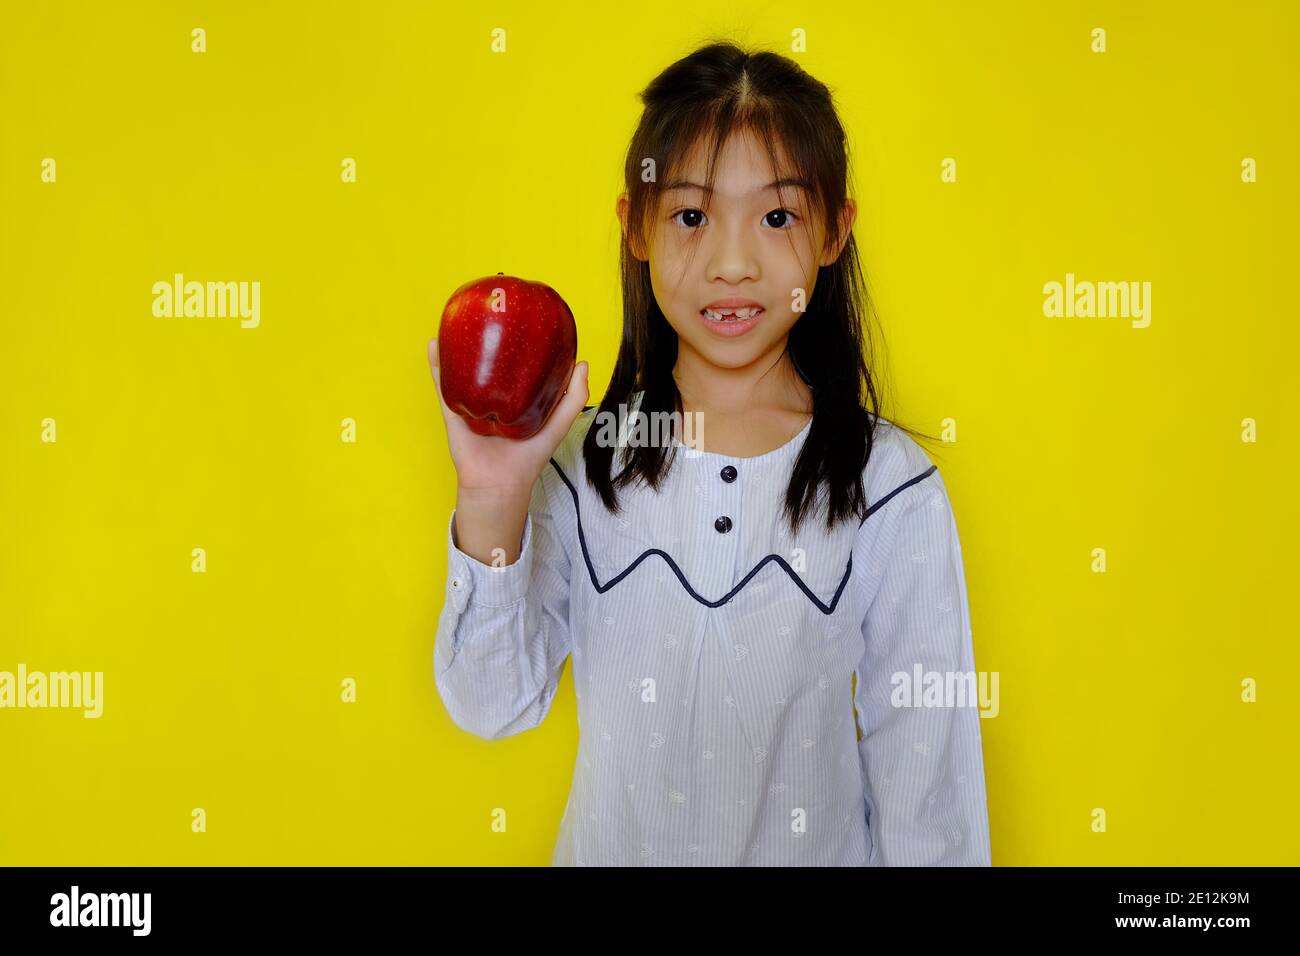 Une jolie jeune fille asiatique tenant une pomme, se préparer à la manger pour le petit déjeuner. Arrière-plan jaune vif. Banque D'Images